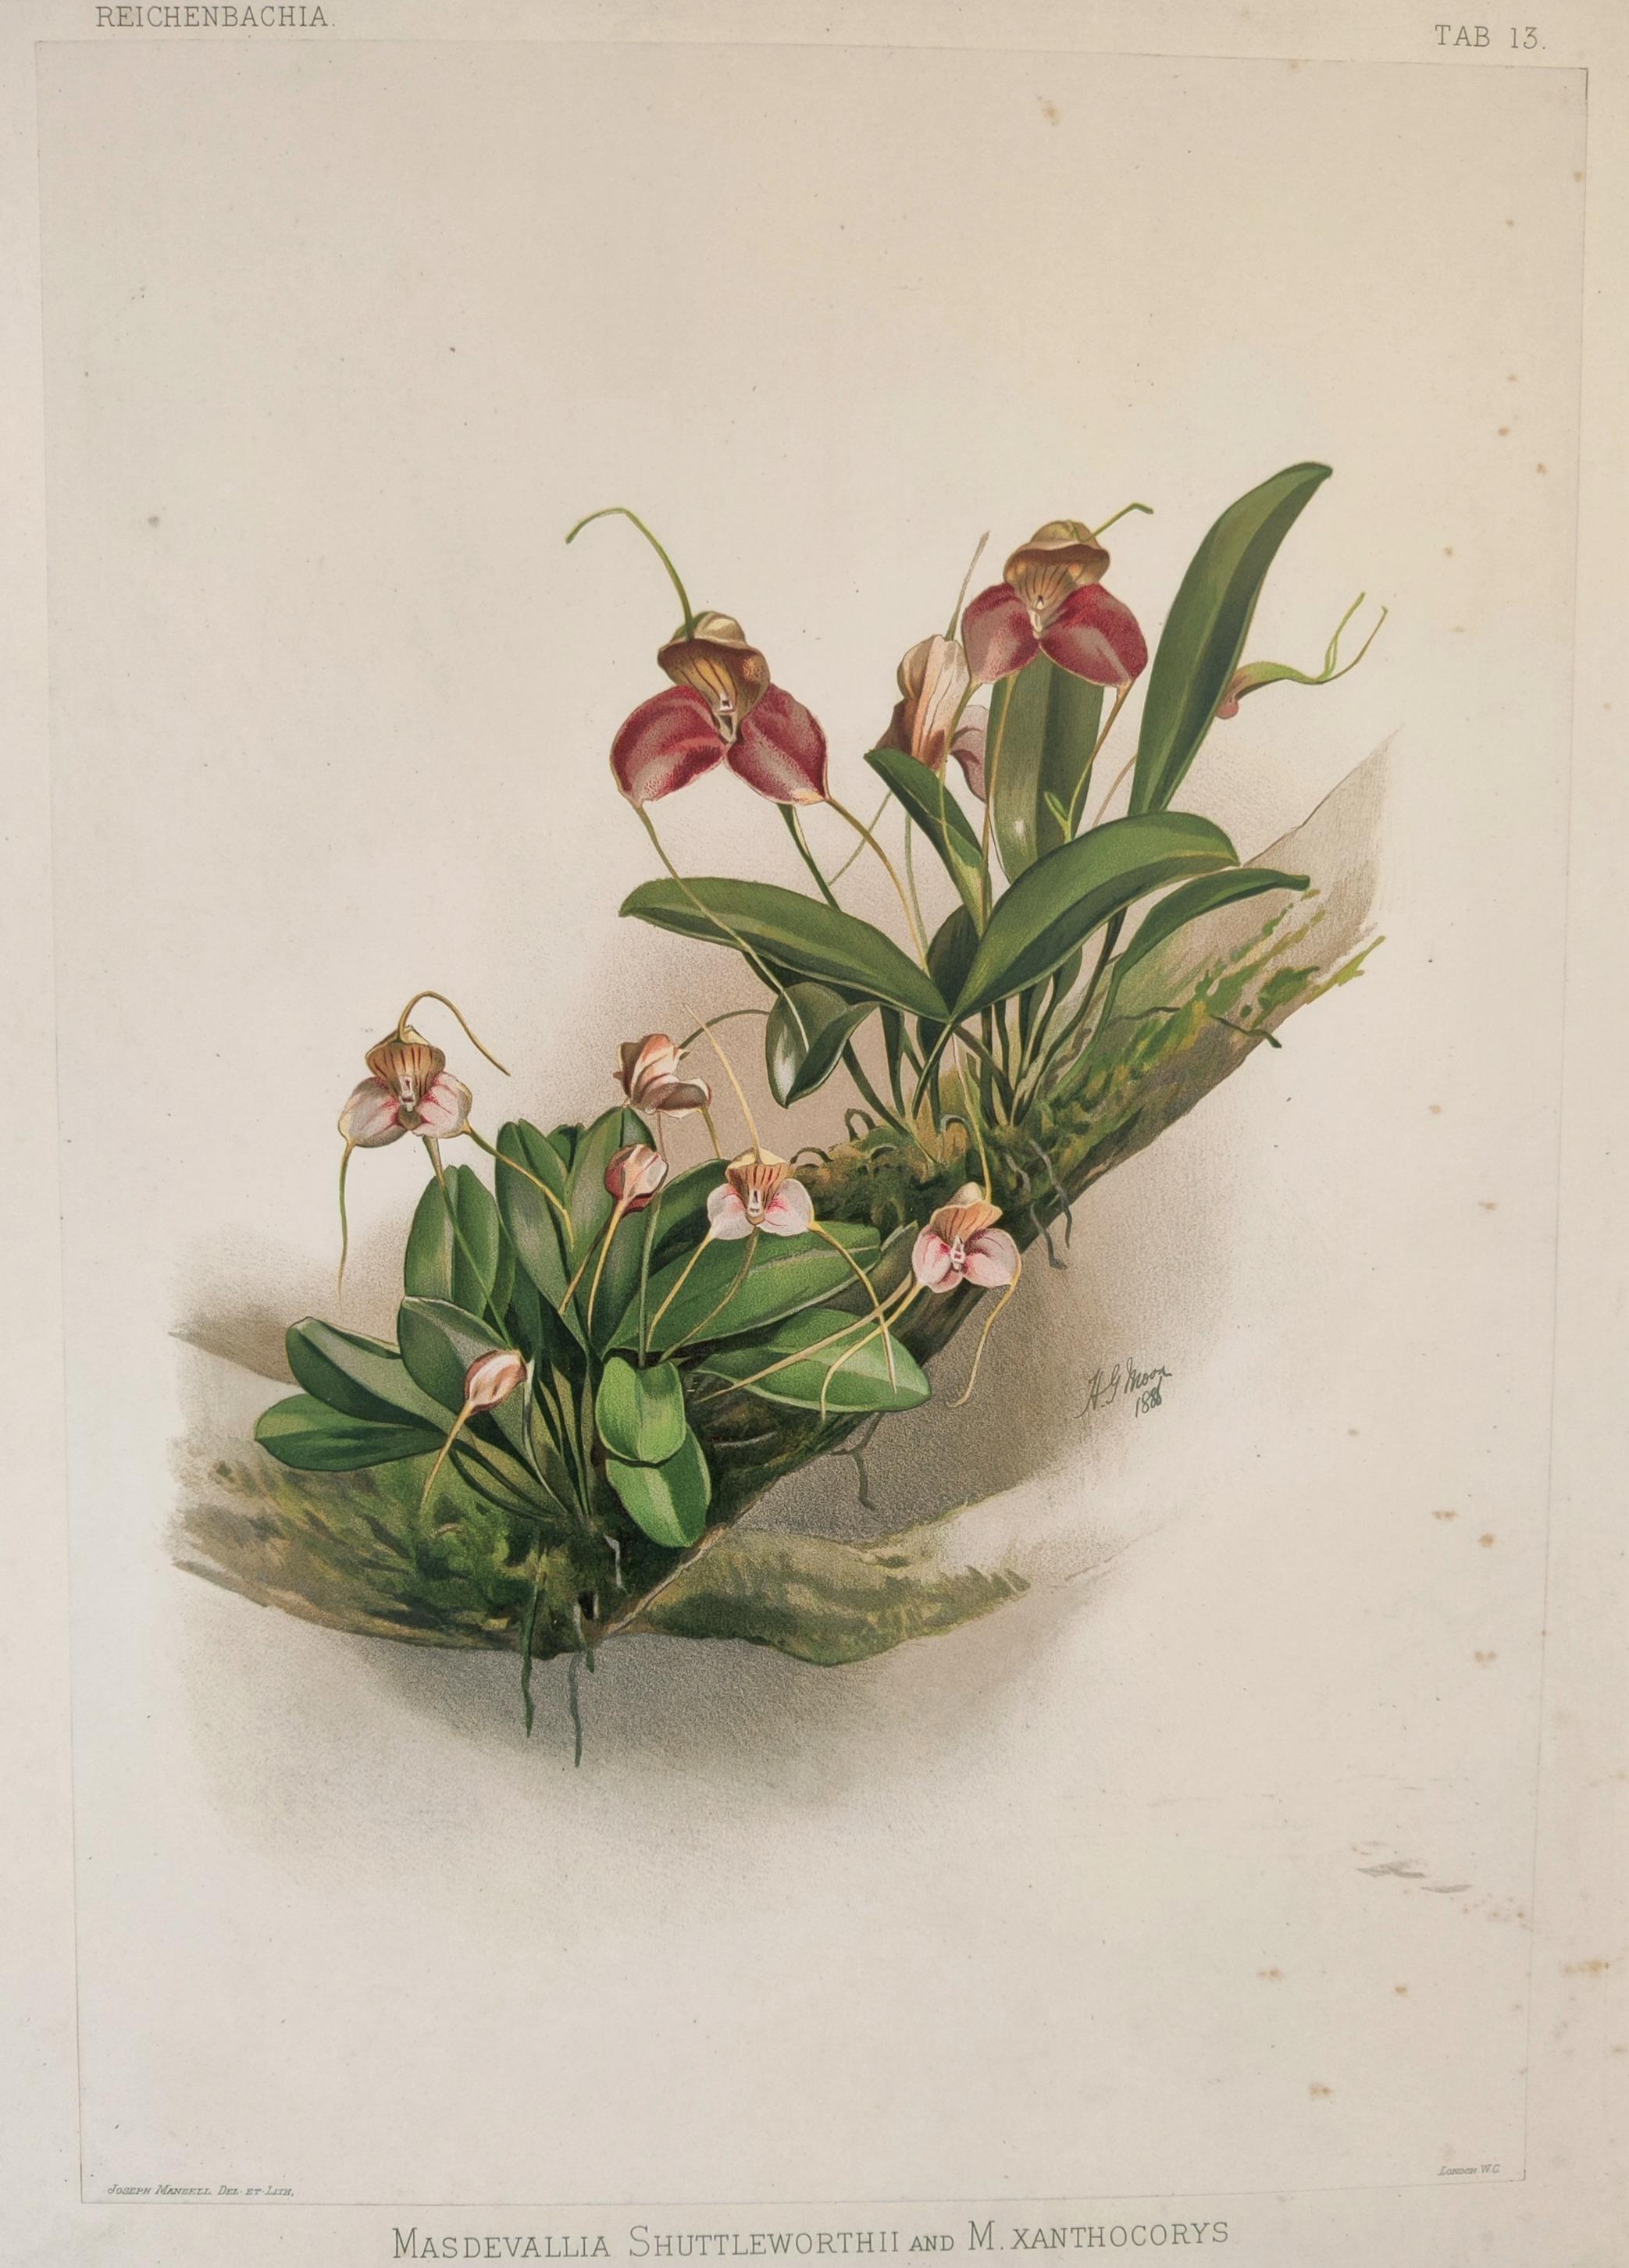 Masdevallia Shuttleworthii et M.Xanthocorys -- Lithographie originale en couleurs de Joseph Mansell d'après l'aquarelle du paysagiste et artiste botanique Henry George Moon (1857-1905) pour Reichenbachia : Orchids Illustrated and Described publié à